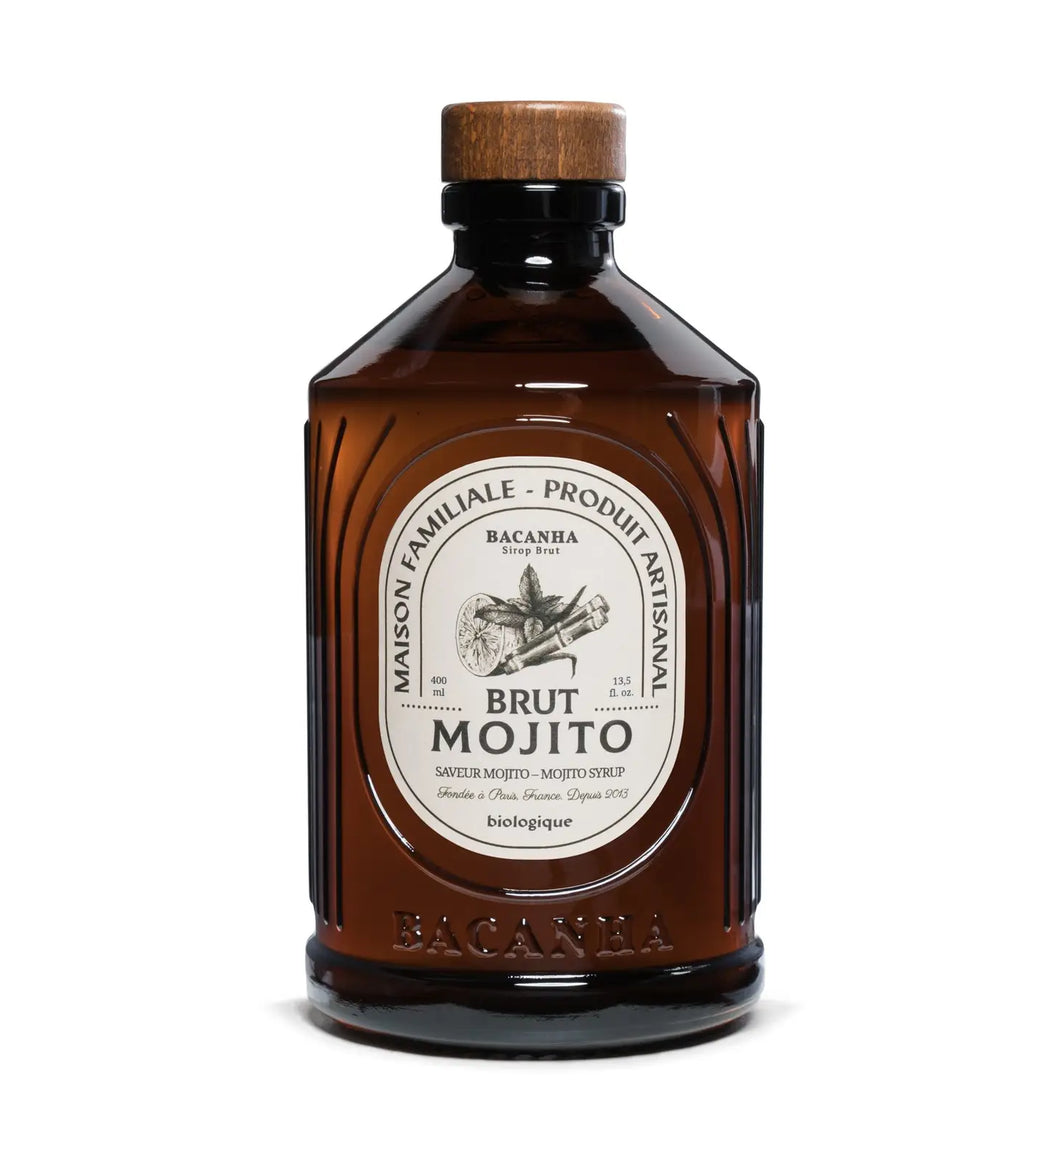 Mojito Syrup